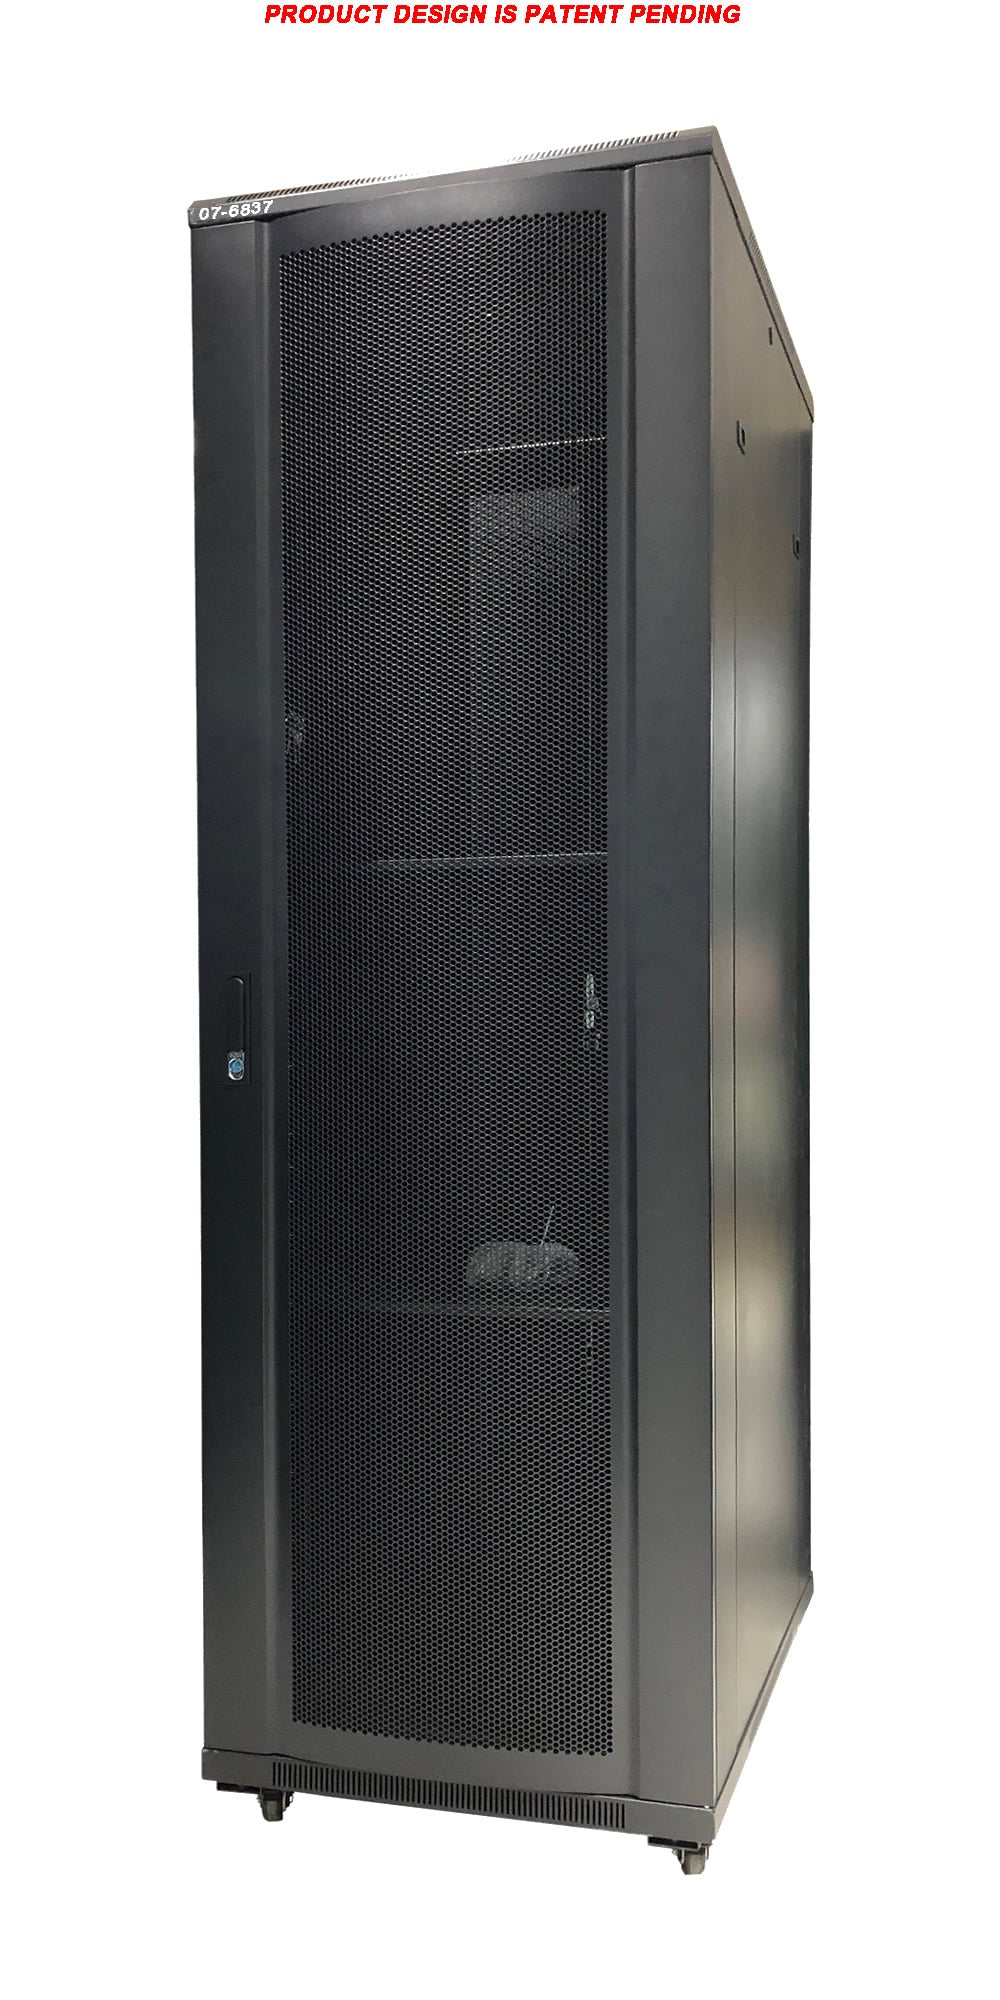 07-6837 37U Floor Standing Server Cabinet - 80cm Extra Deep, Metal Door, Heavy Duty Caster, Fan & Shelf